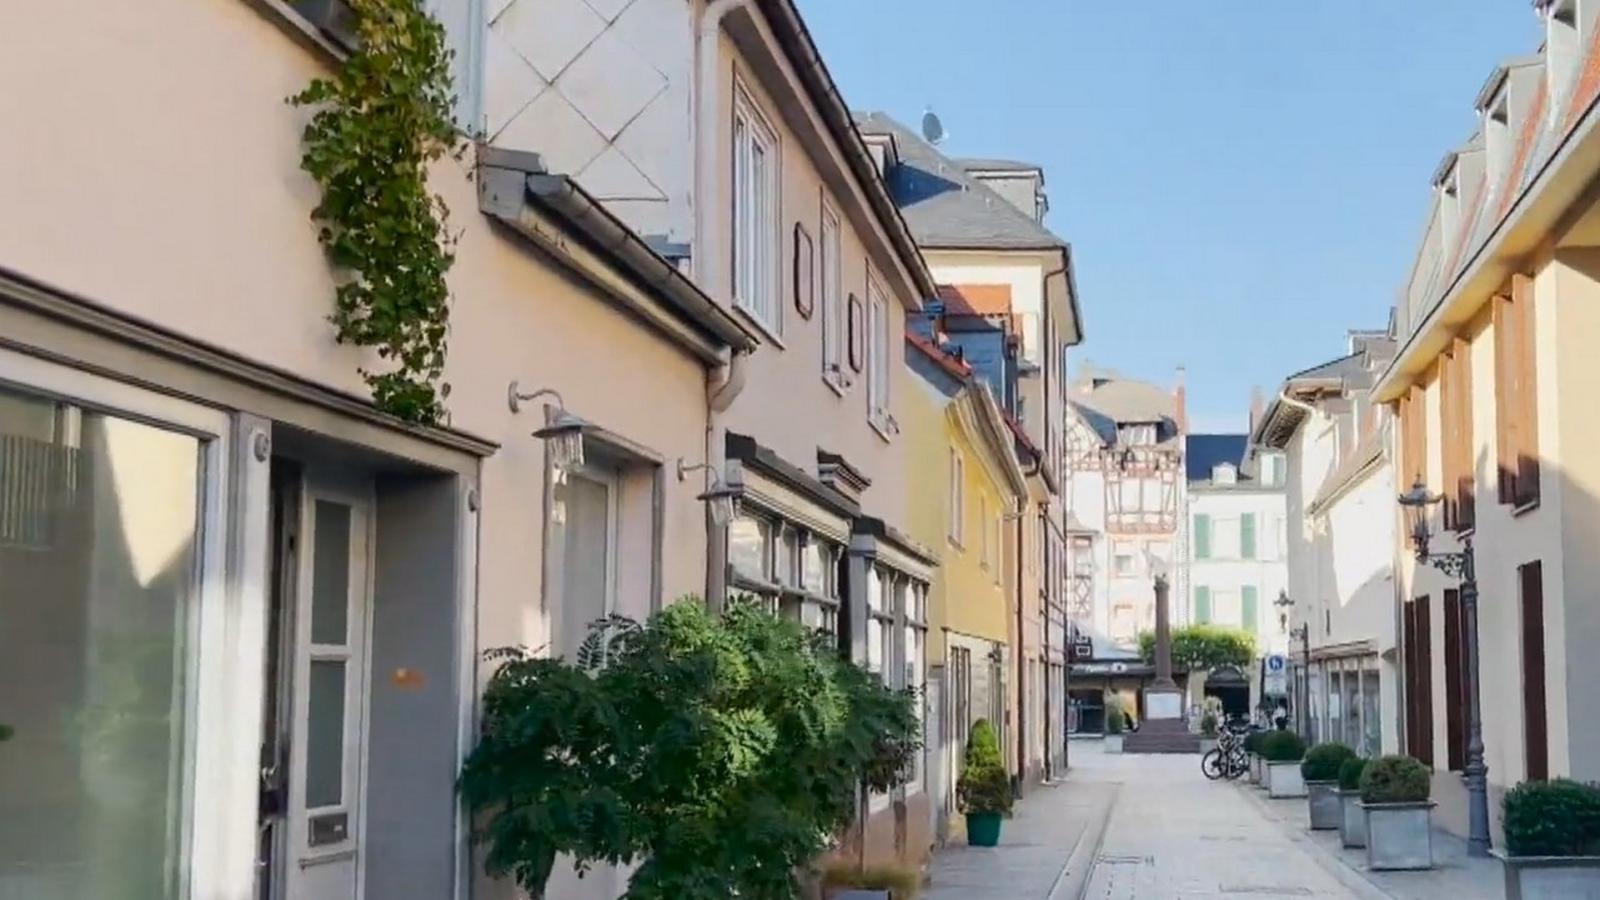 Маленький уютный городок: как Шатунов жил в Германии среди церквей и казино - image 3